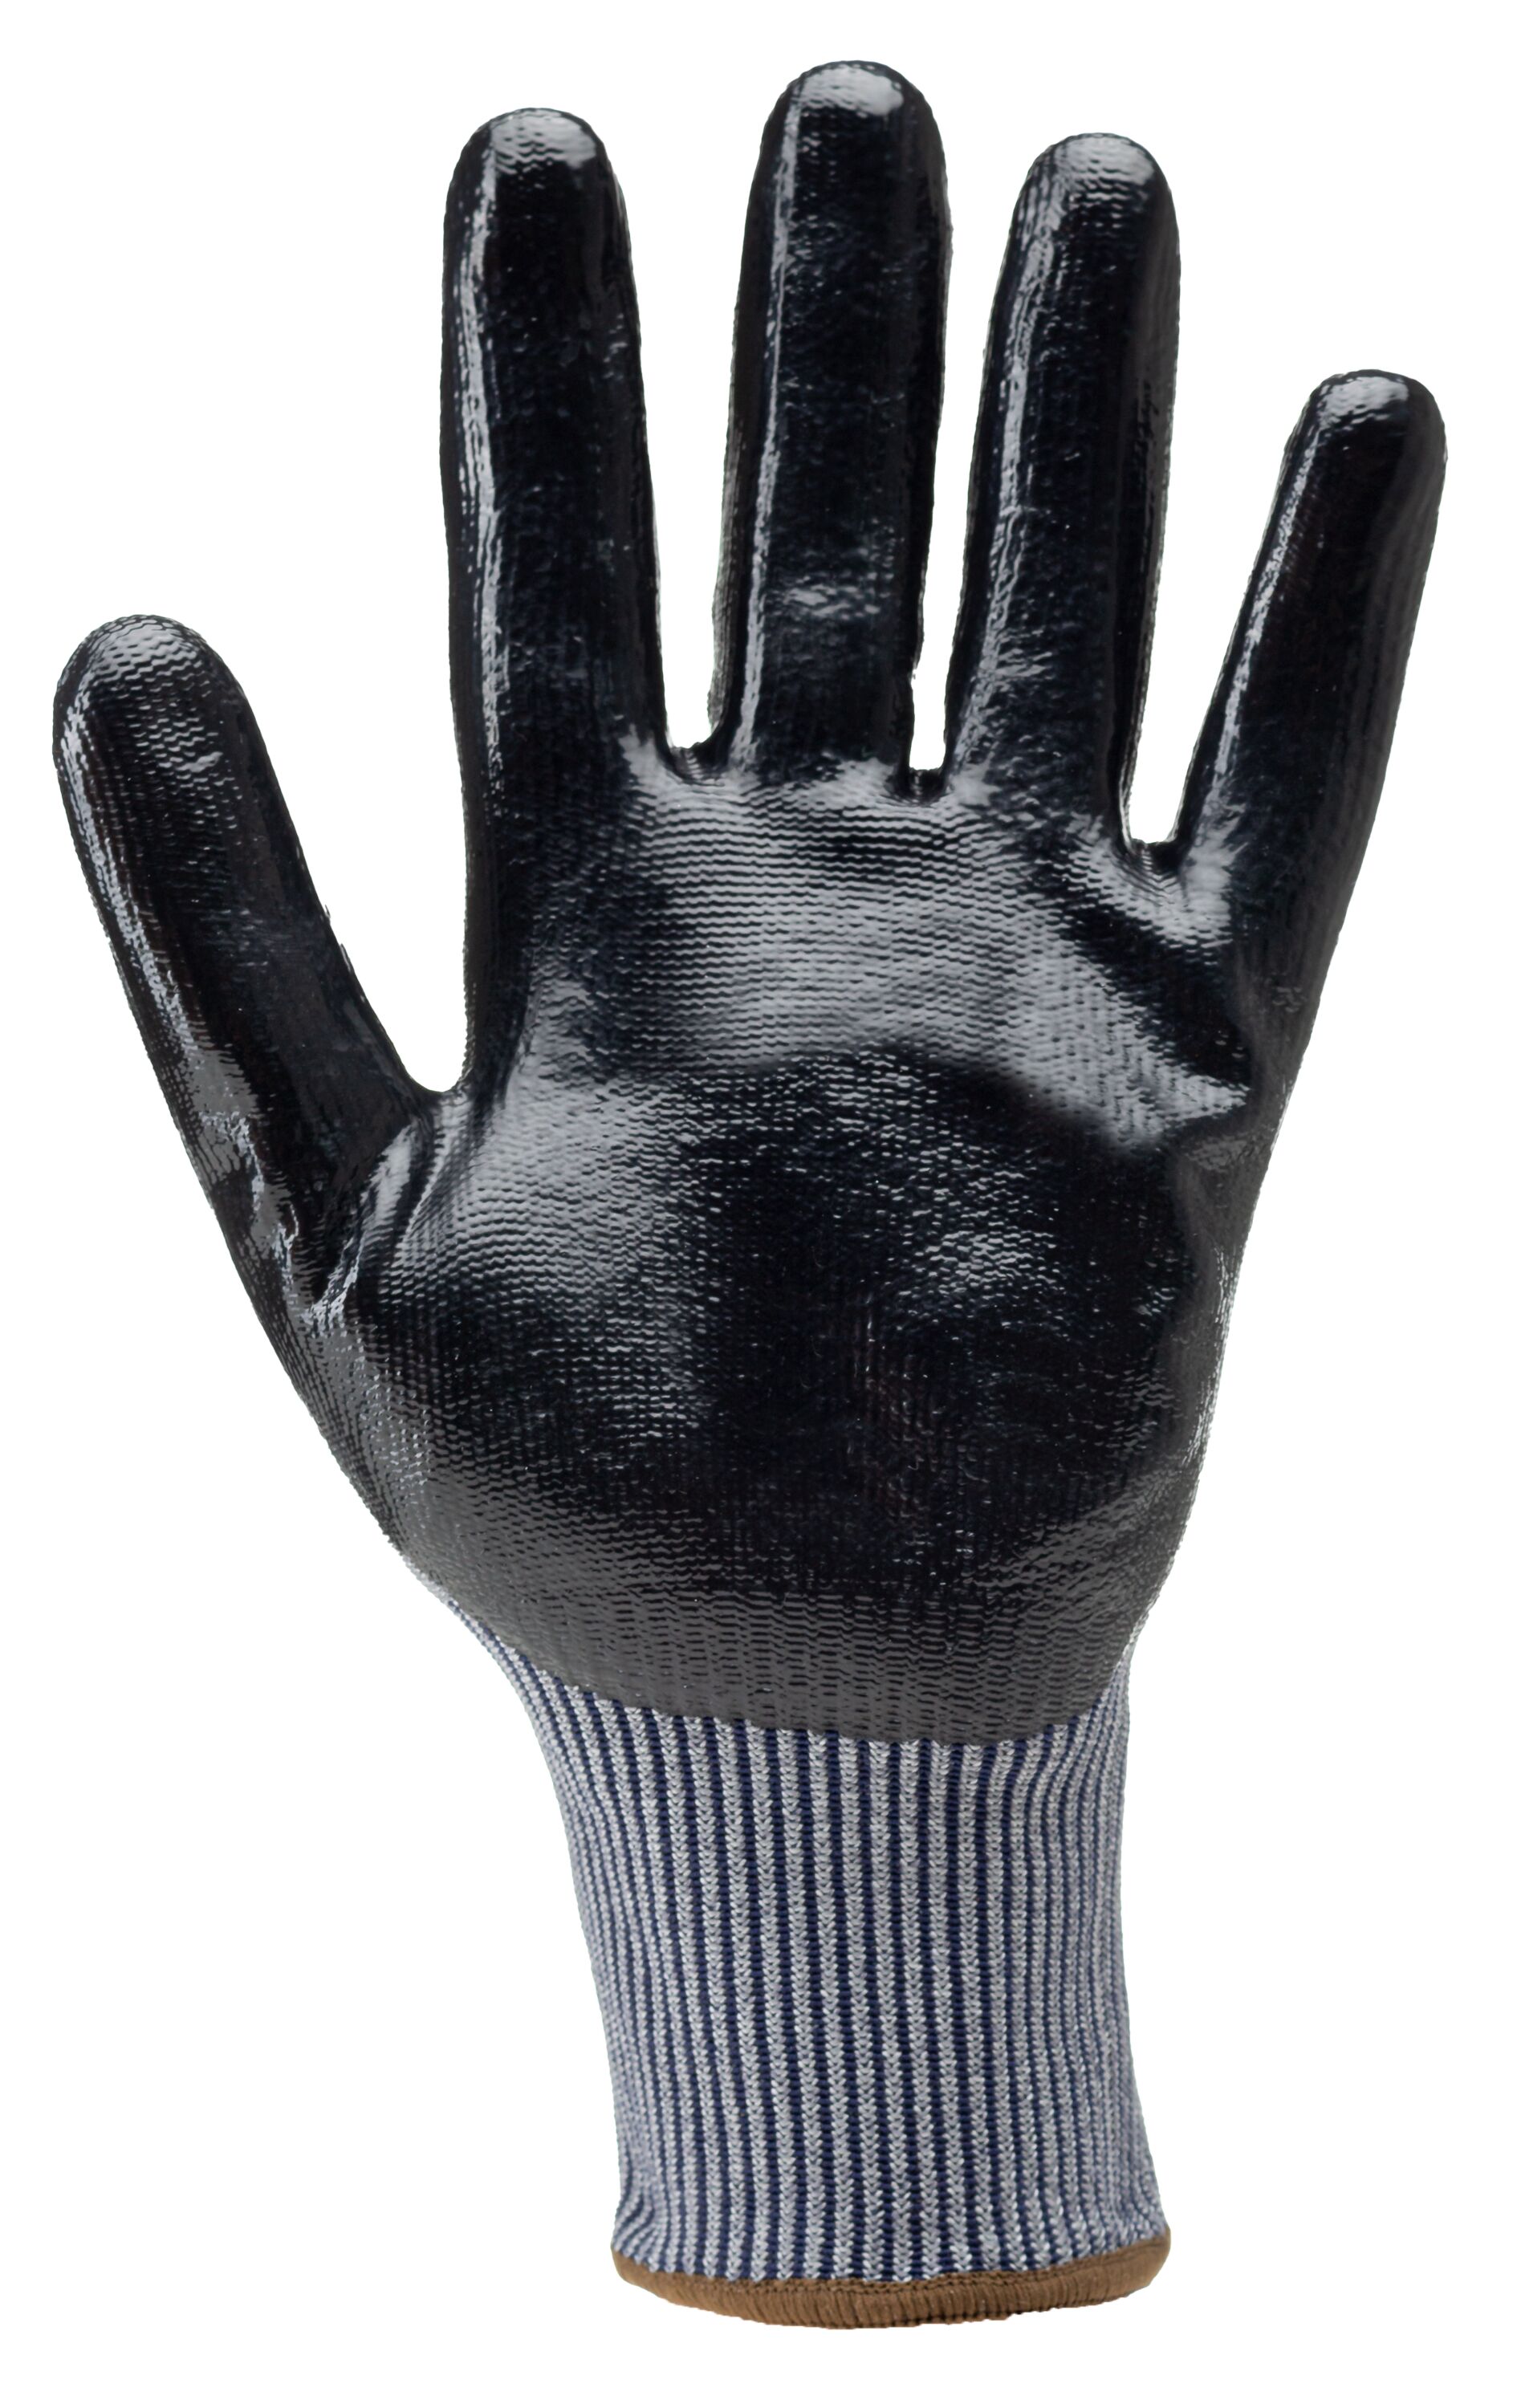 Gants anti-coupure EUROCUT N313 13G gris ENDUCTION paume nitrile lisse noir  - extra confort - COVERGUARD - MisterMateriaux